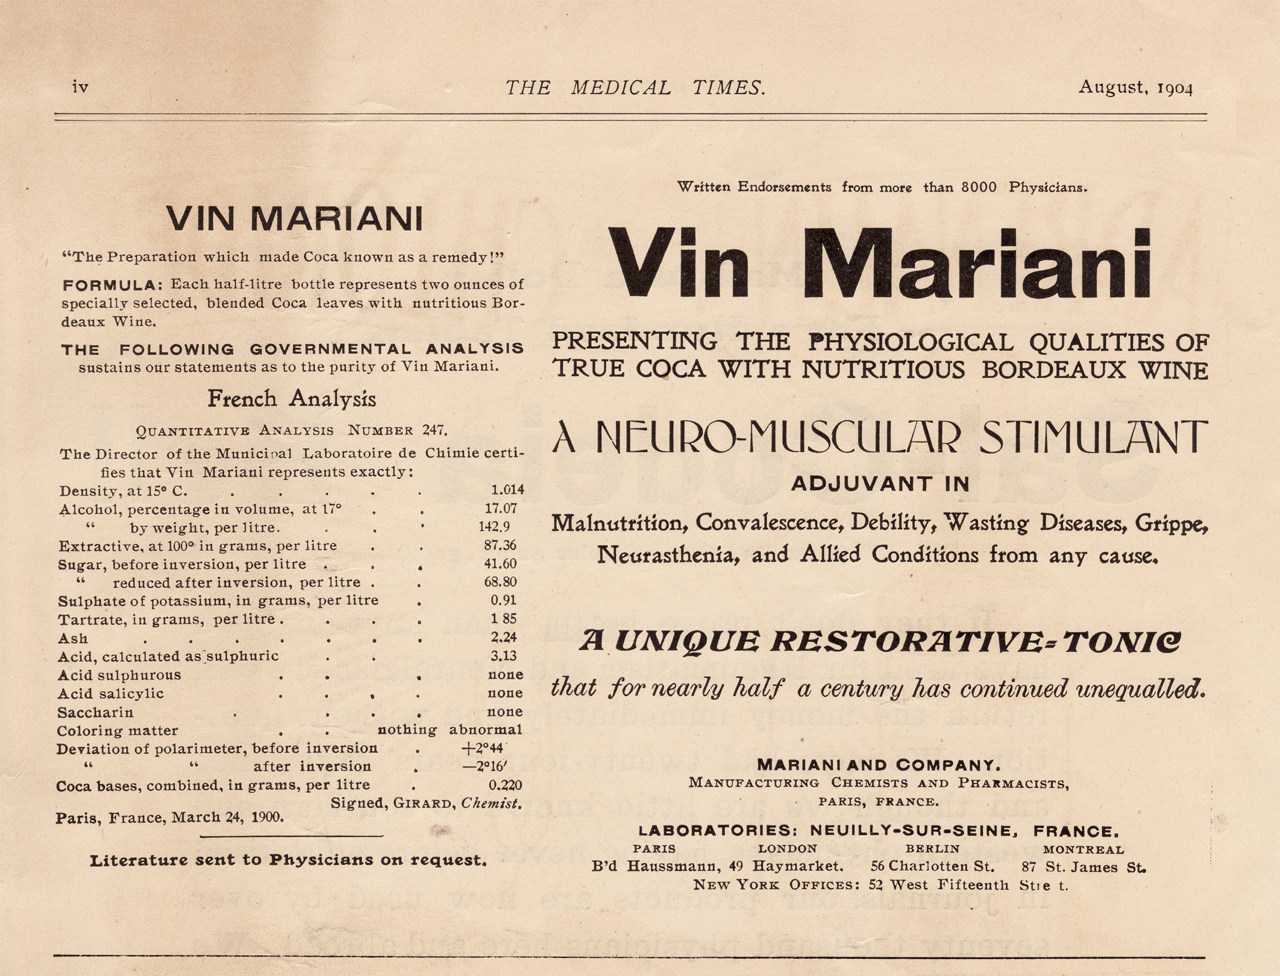 [Vin+Mariani+Ingrediants+Aug+1904+1280.GIF]